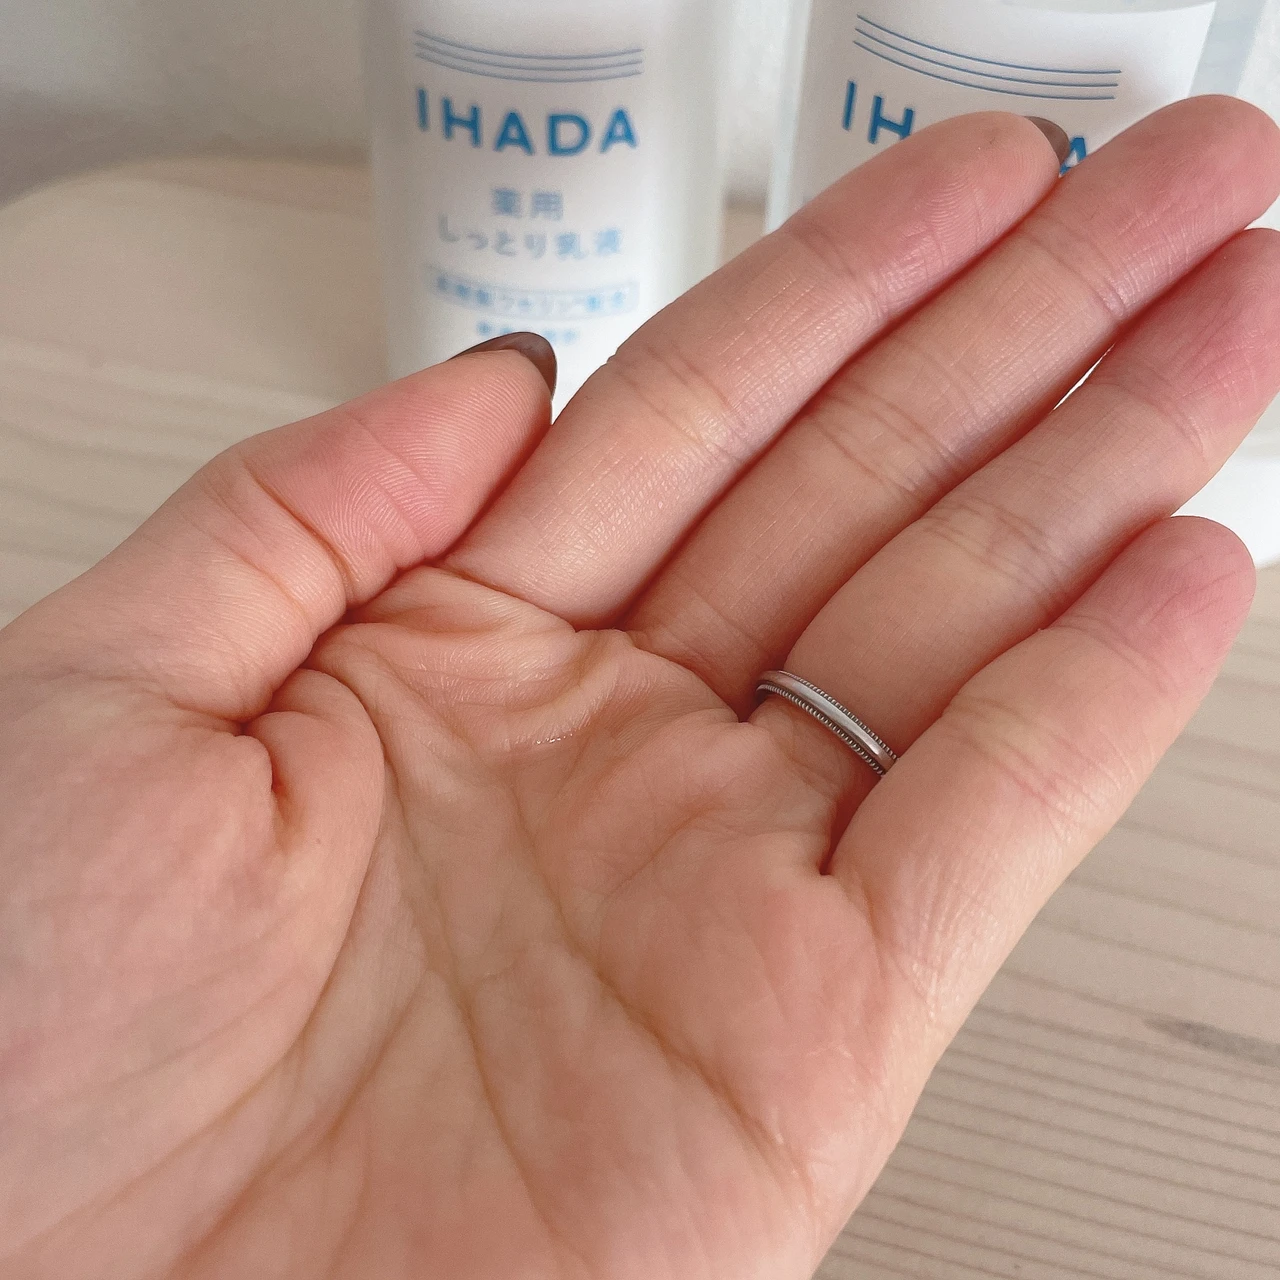 【ゆらぎケアに】IHADA(イハダ)の高精製ワセリン配合スキンケアで季節の変わり目の肌荒れ対策！効果的な使い方もご紹介します♡_3_2